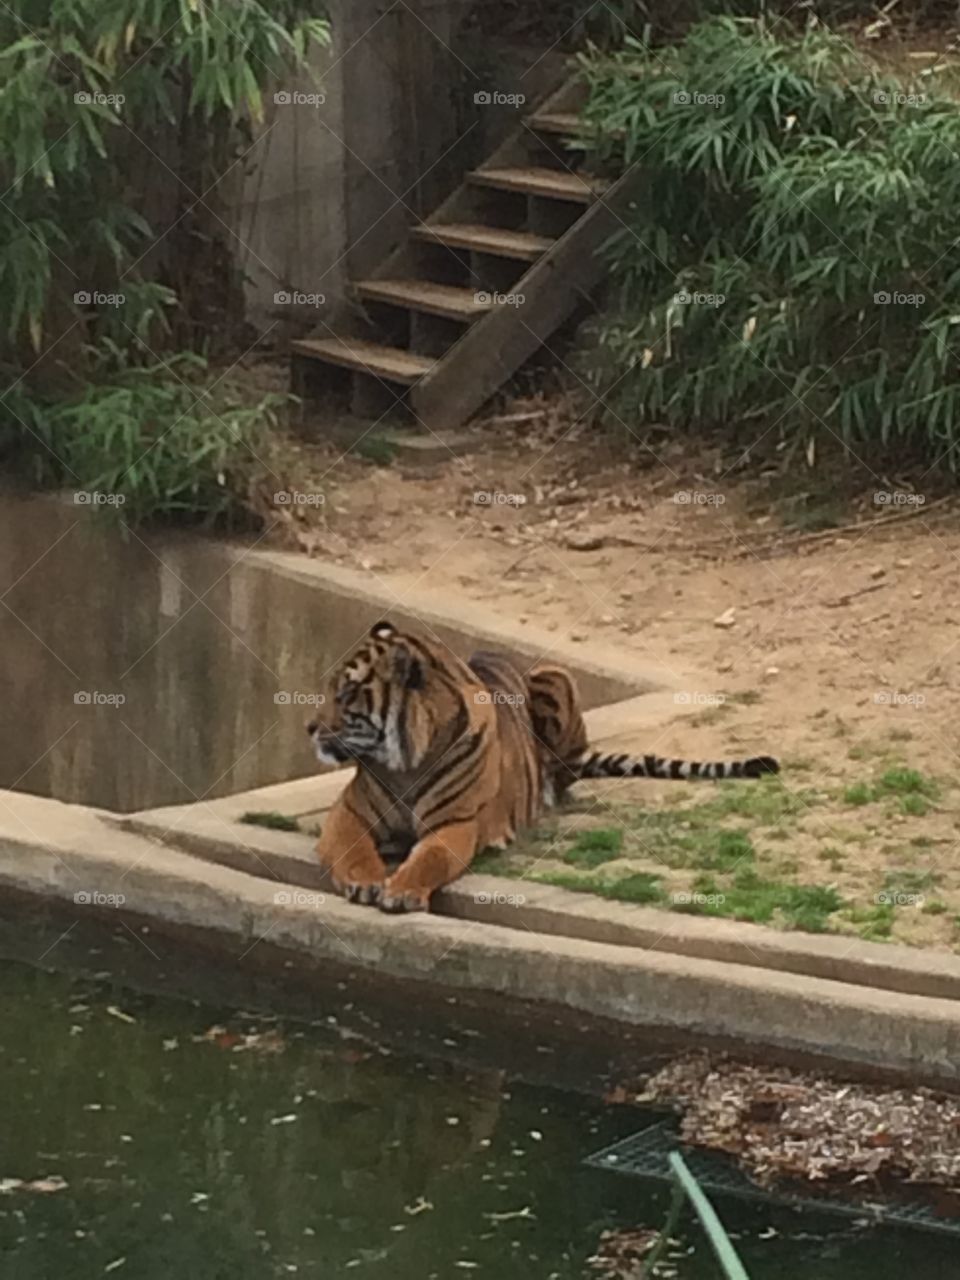 Tiger at the DC zoo
